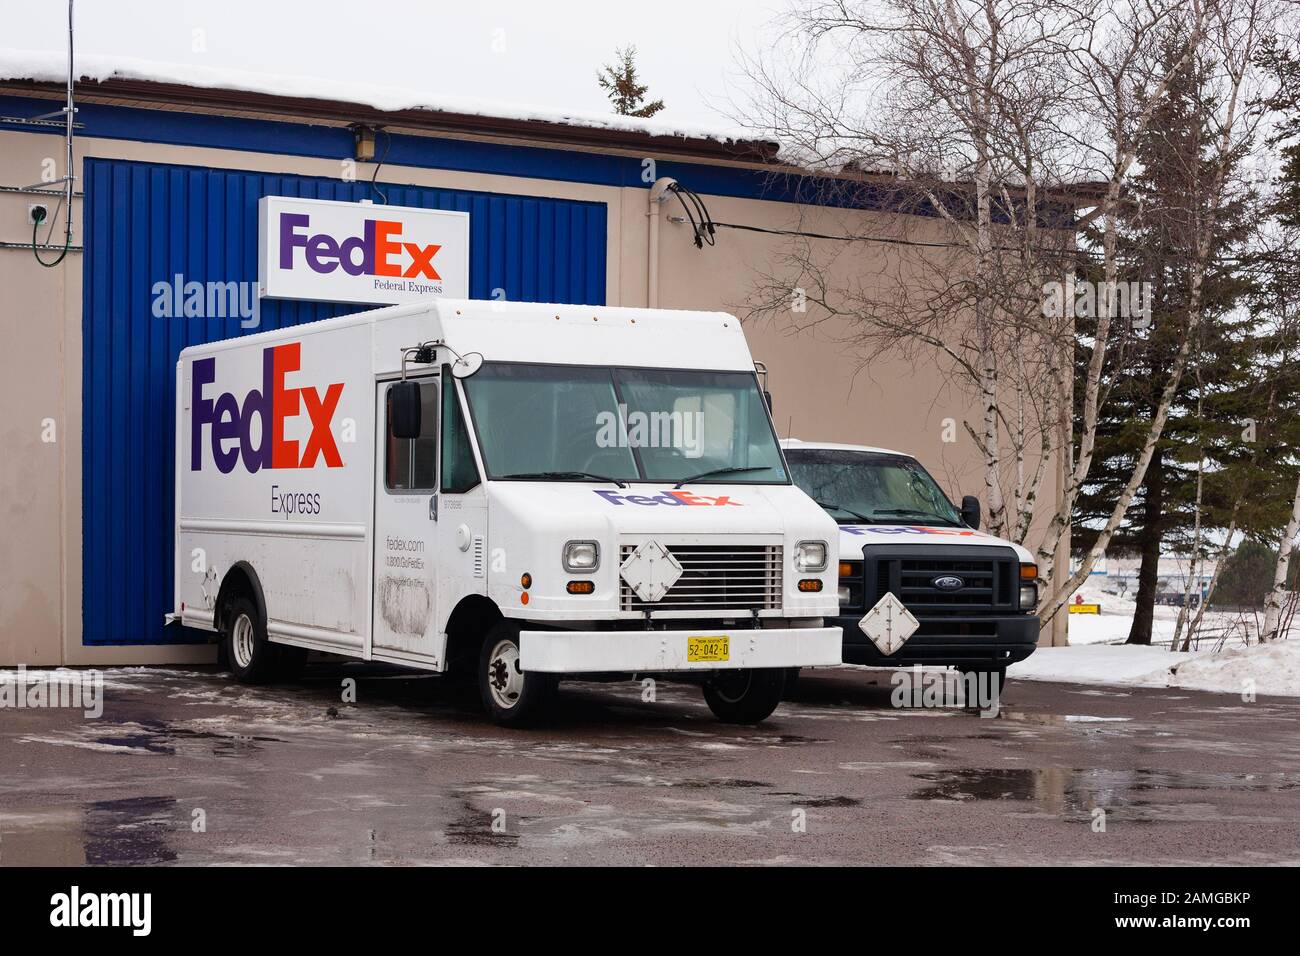 Truro, Canada - 11 janvier 2020 : camion de livraison FedEx stationné. FedEx Corporation est une compagnie de messagerie américaine basée à Memphis, Tennessee et operat Banque D'Images